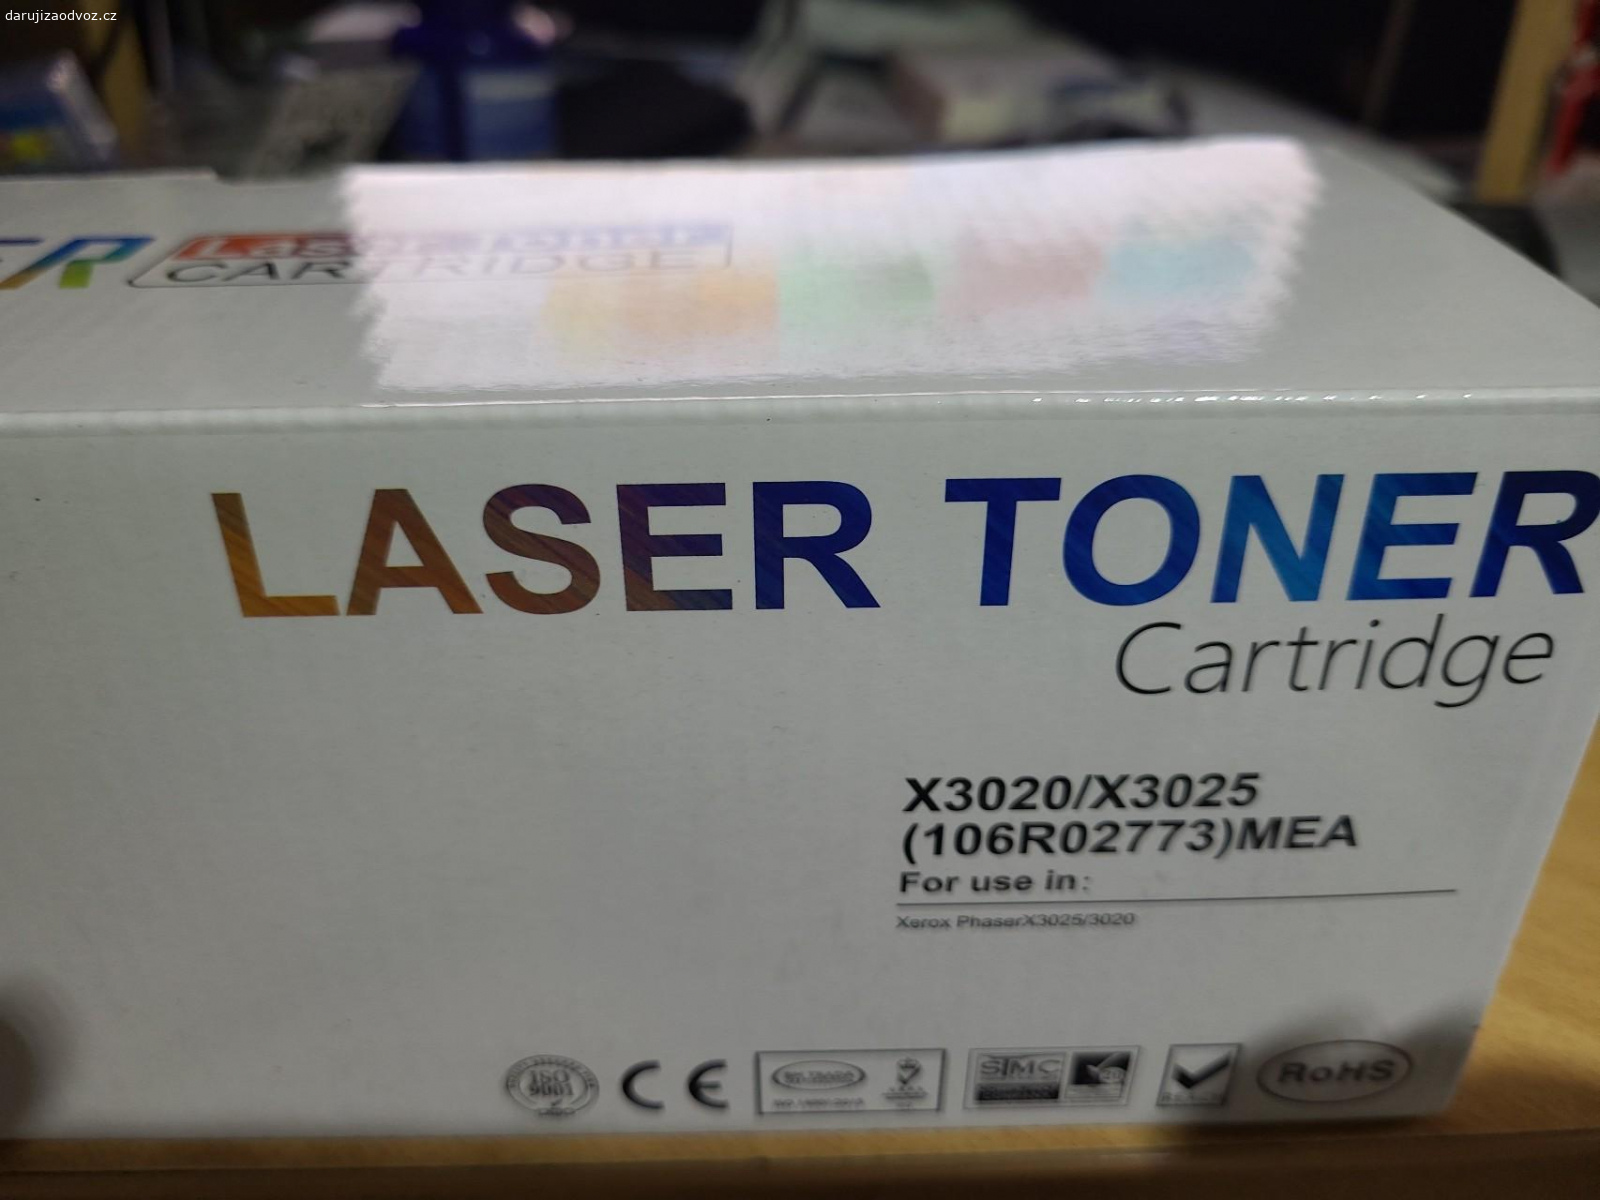 Nový toner. Nový černý toner pro laser tiskárnu Samsung ML 1660 Pouze volat 724092563